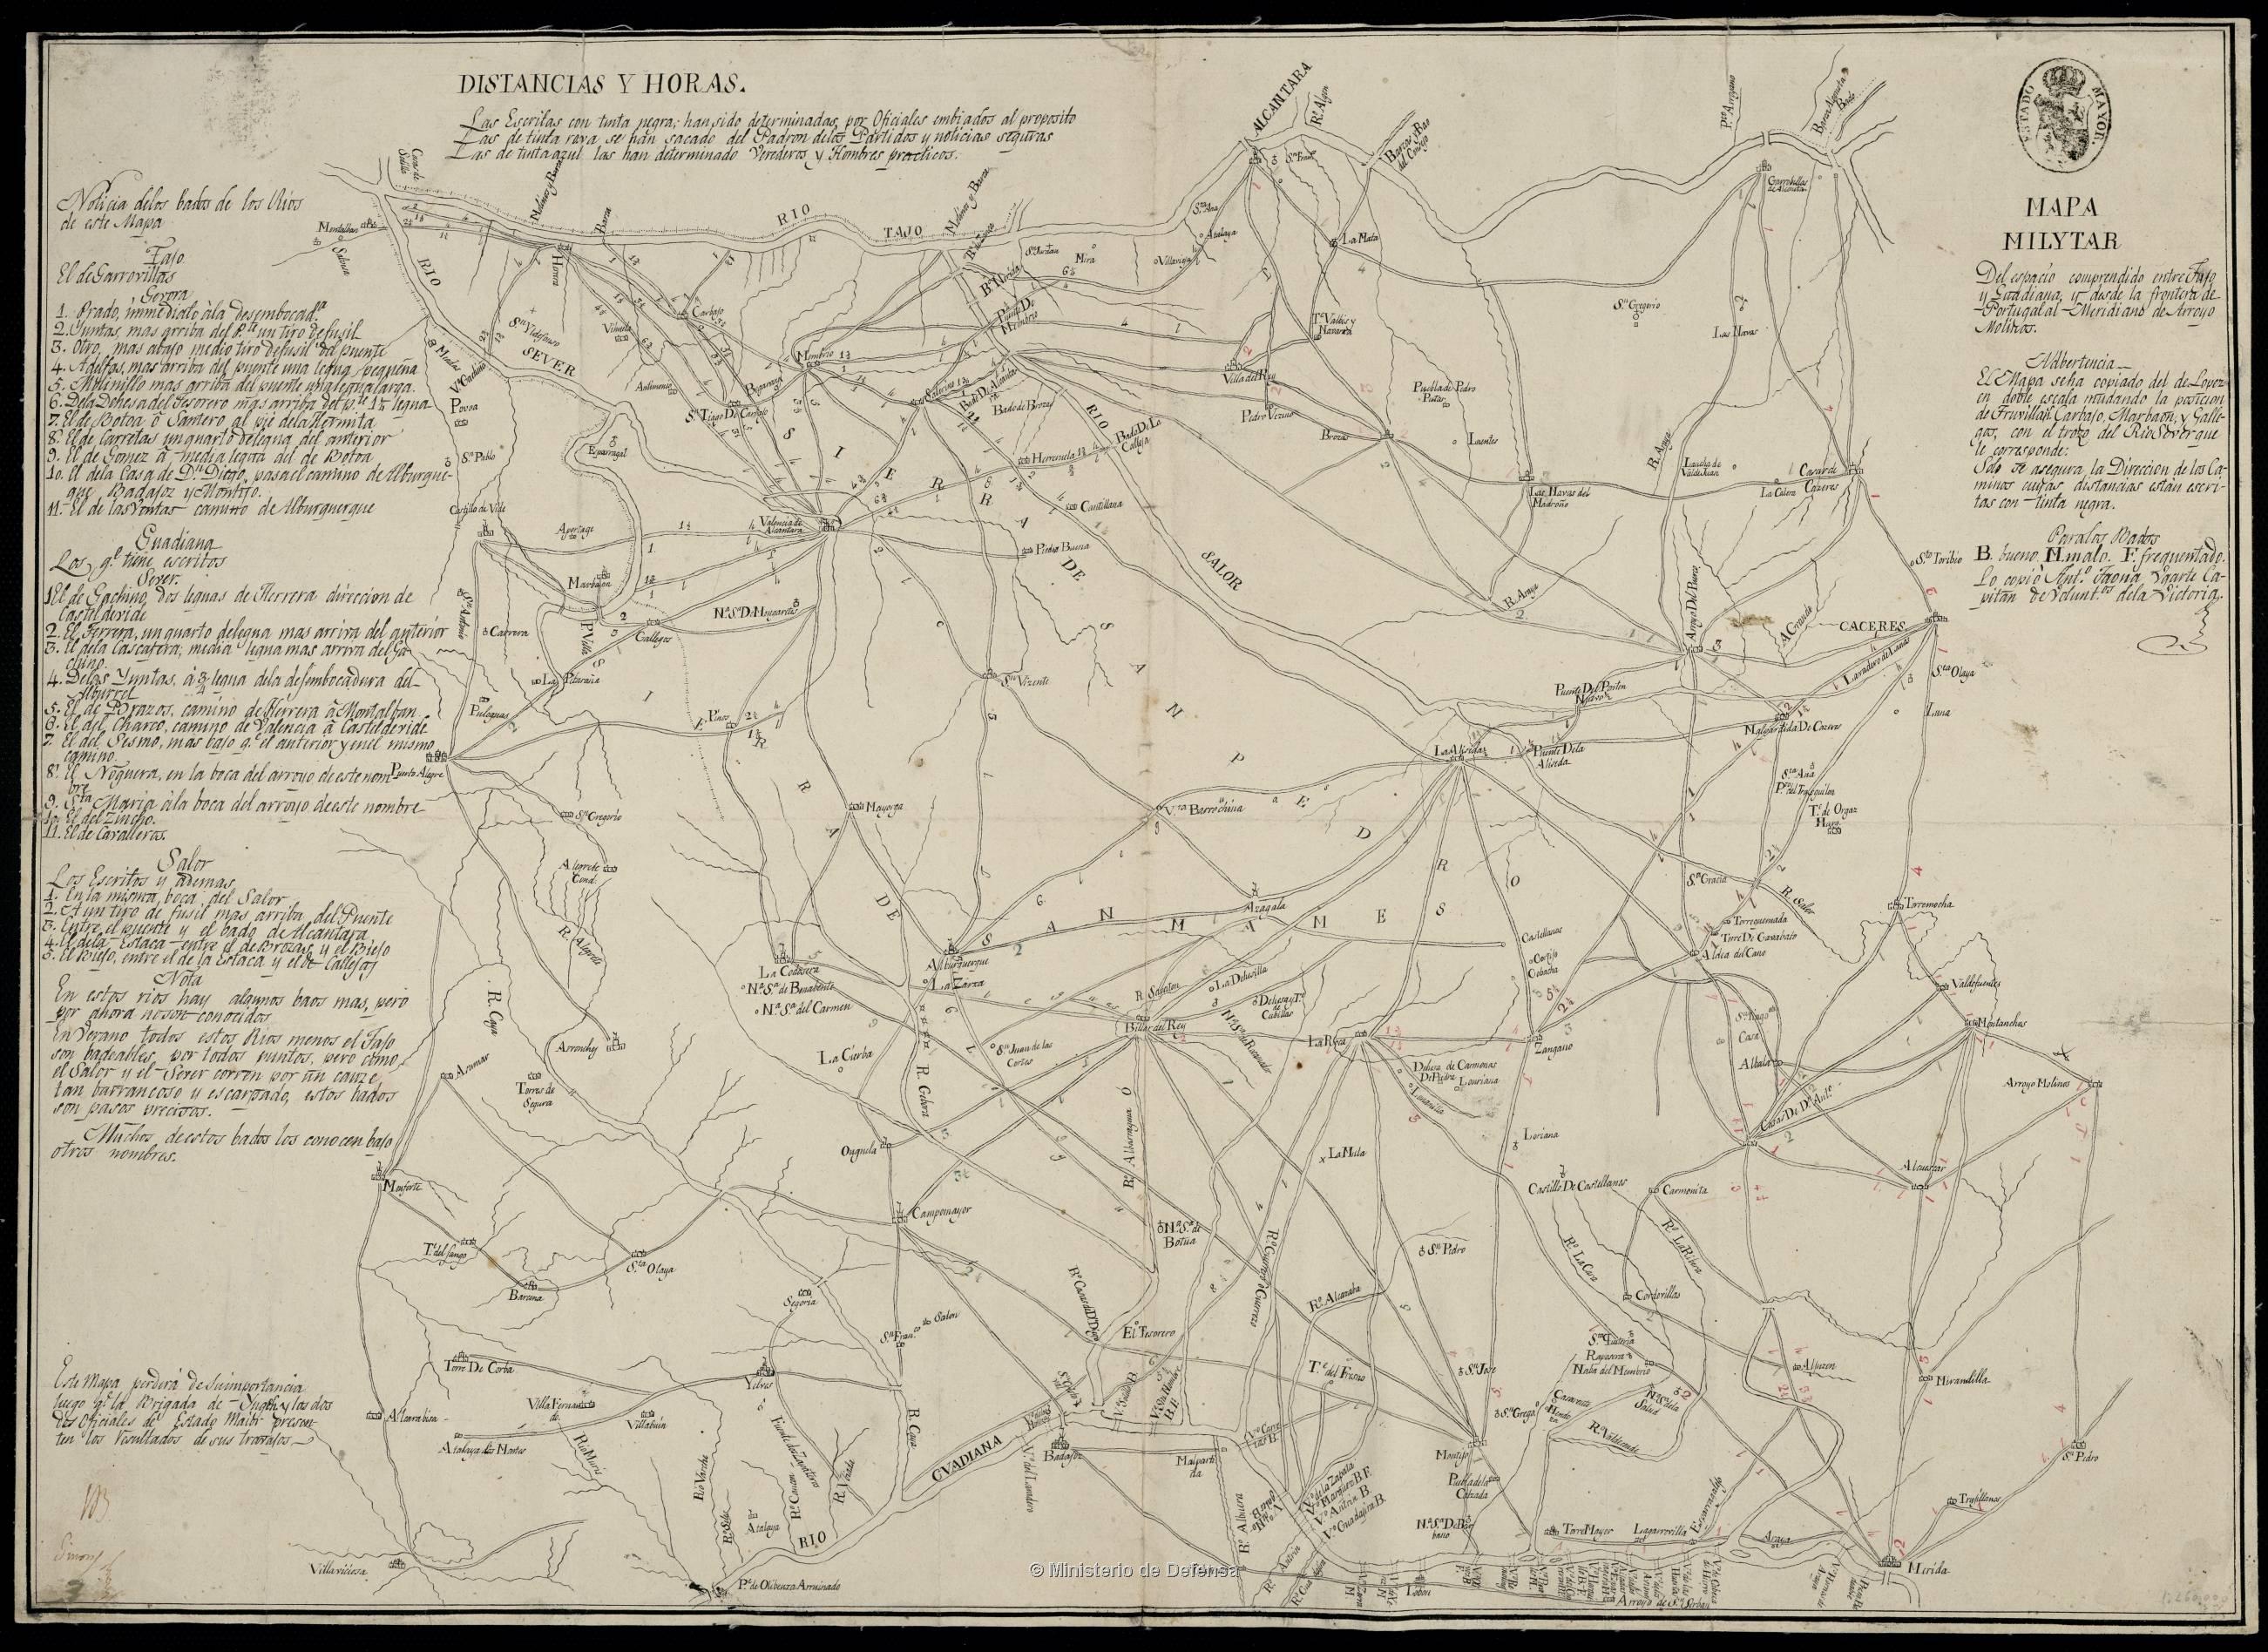 Mapa militar del espacio comprendido entre Tajo y Guadiana [...]